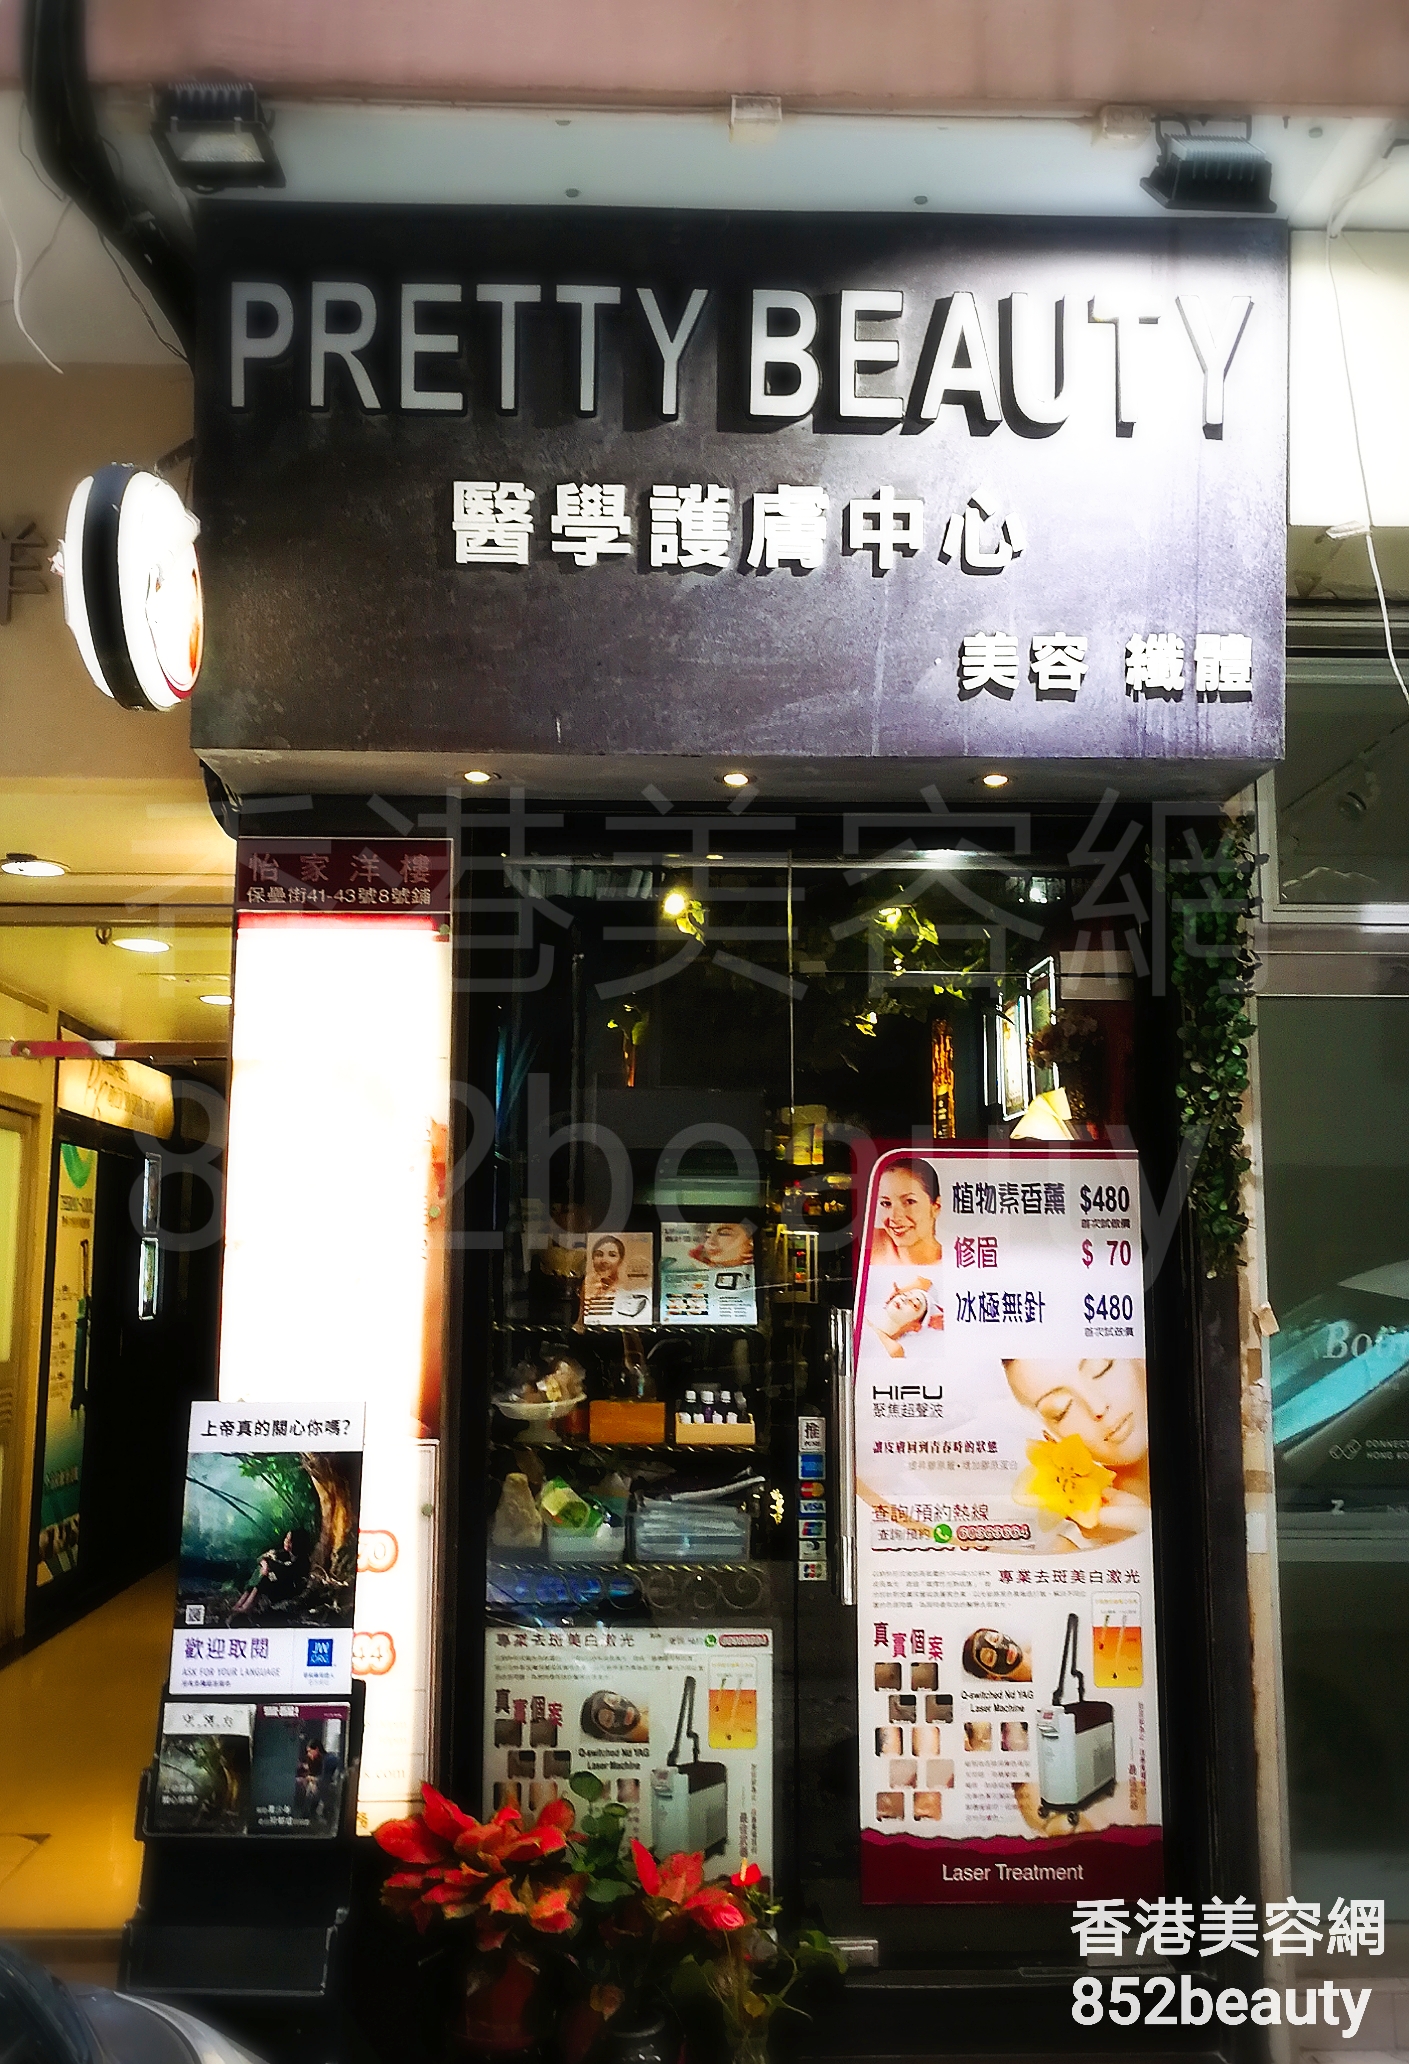 美容院 Beauty Salon: Pretty Beauty 醫學護膚中心 (北角店)